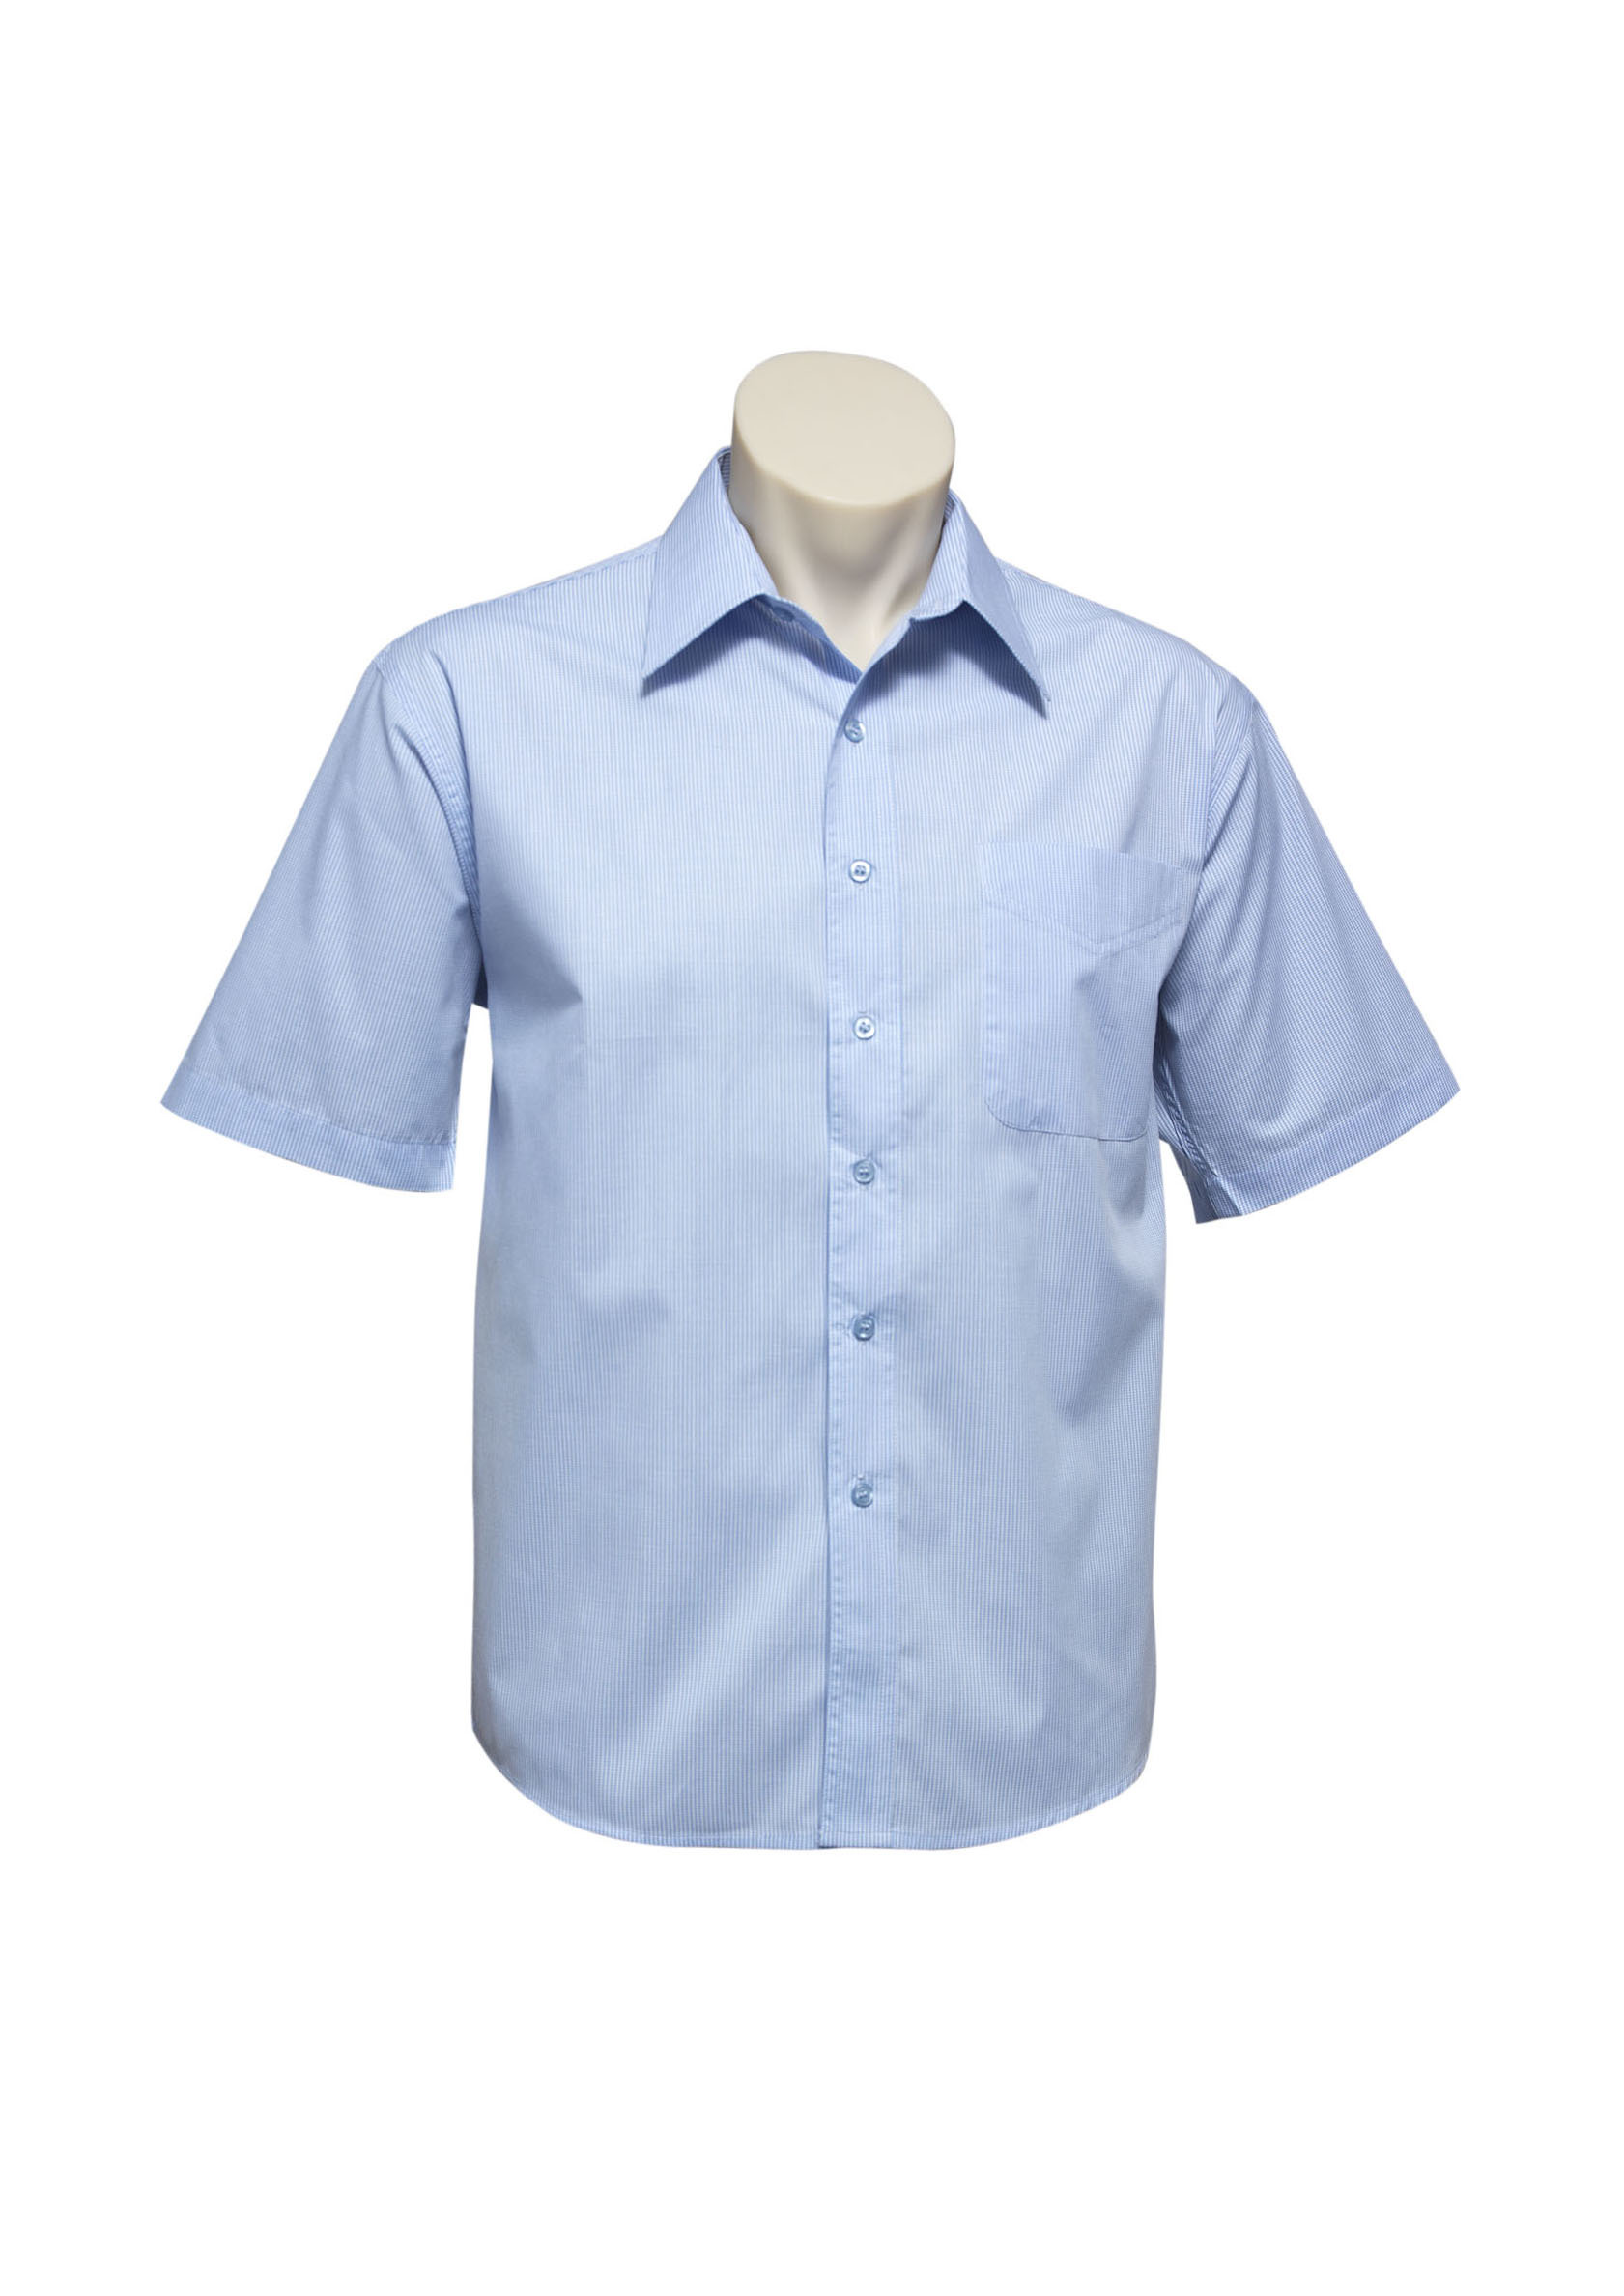 Mens Micro Check Short Sleeve Shirt : Weatherware